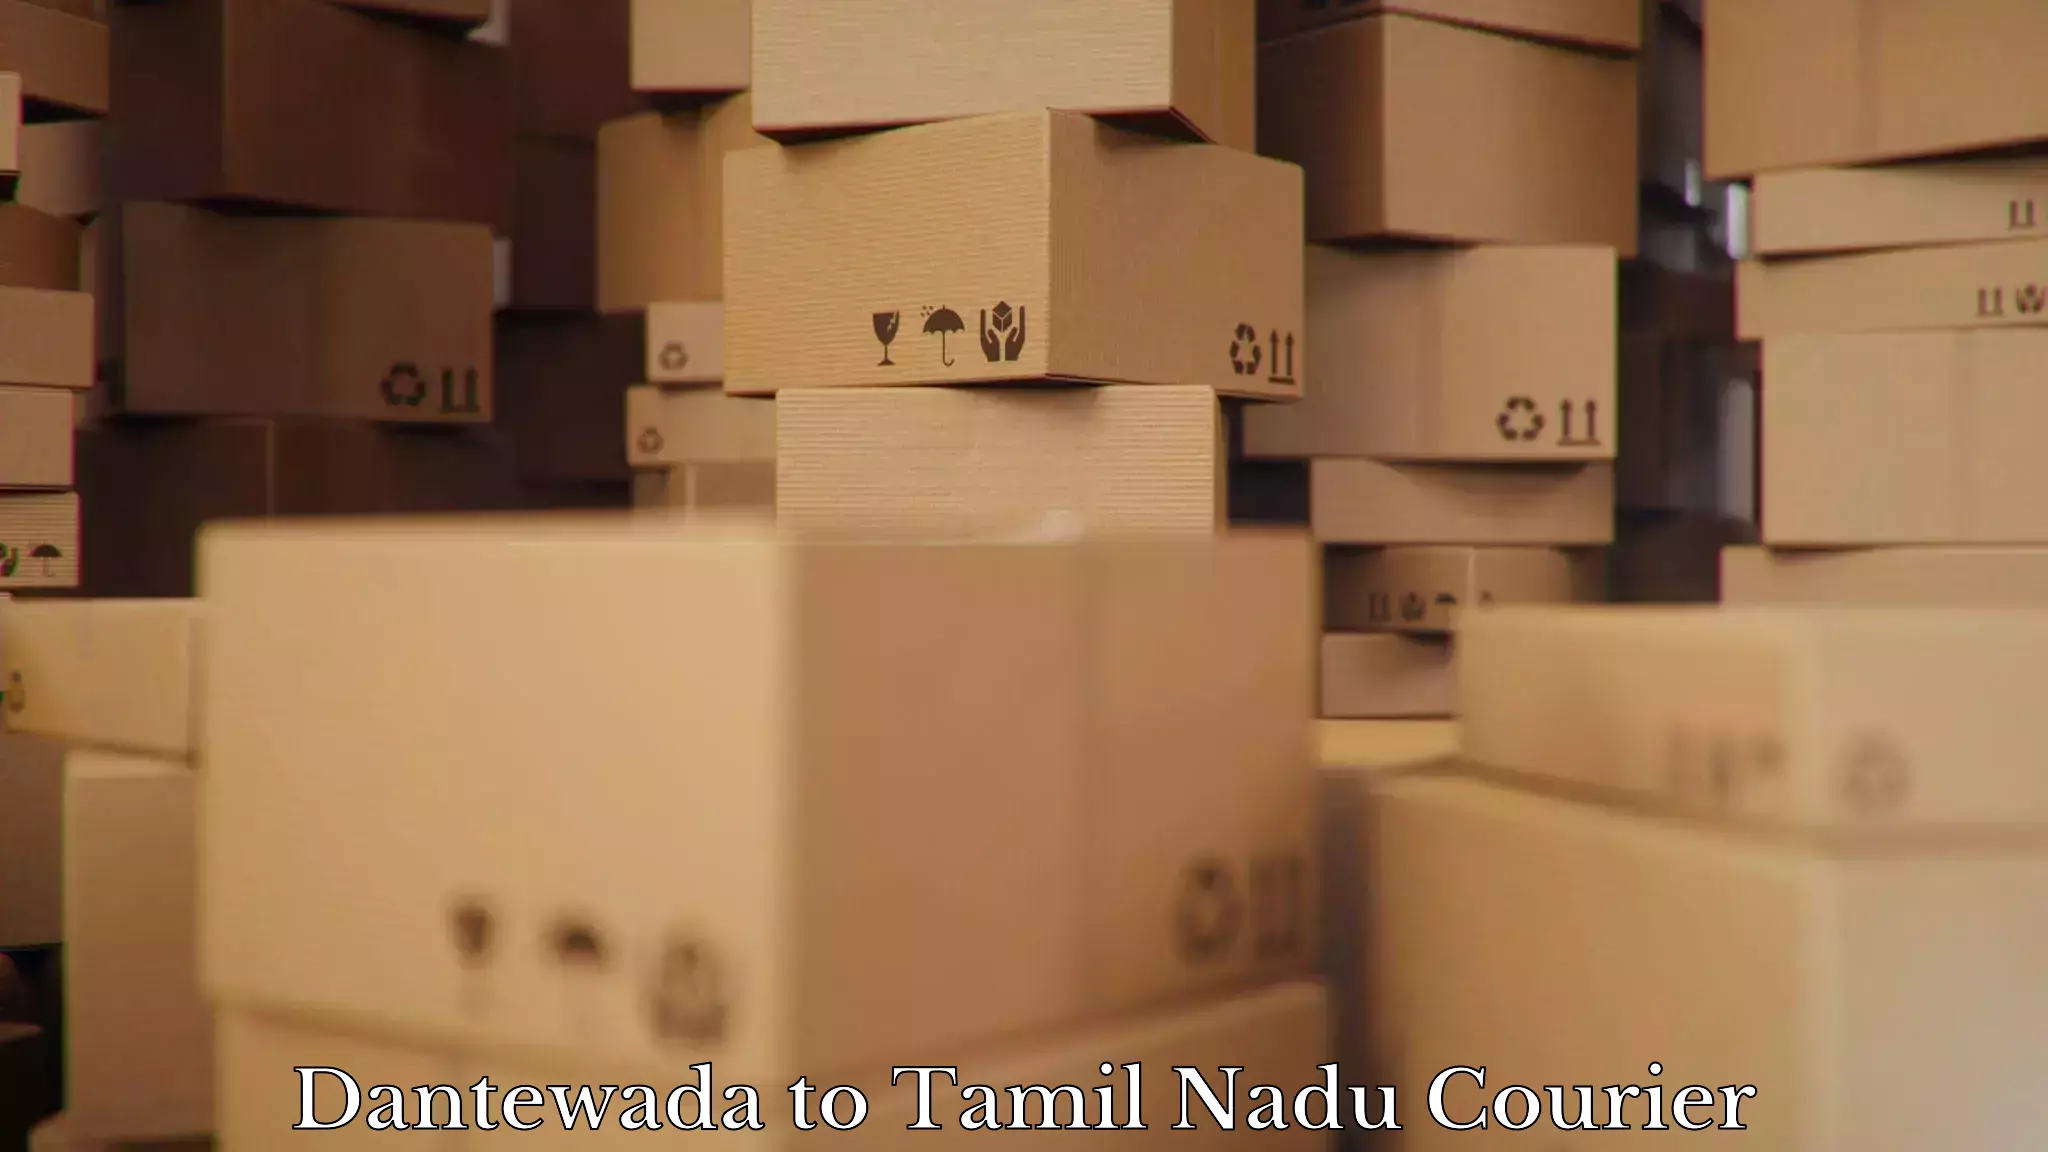 Cost-effective moving solutions Dantewada to Periyakulam